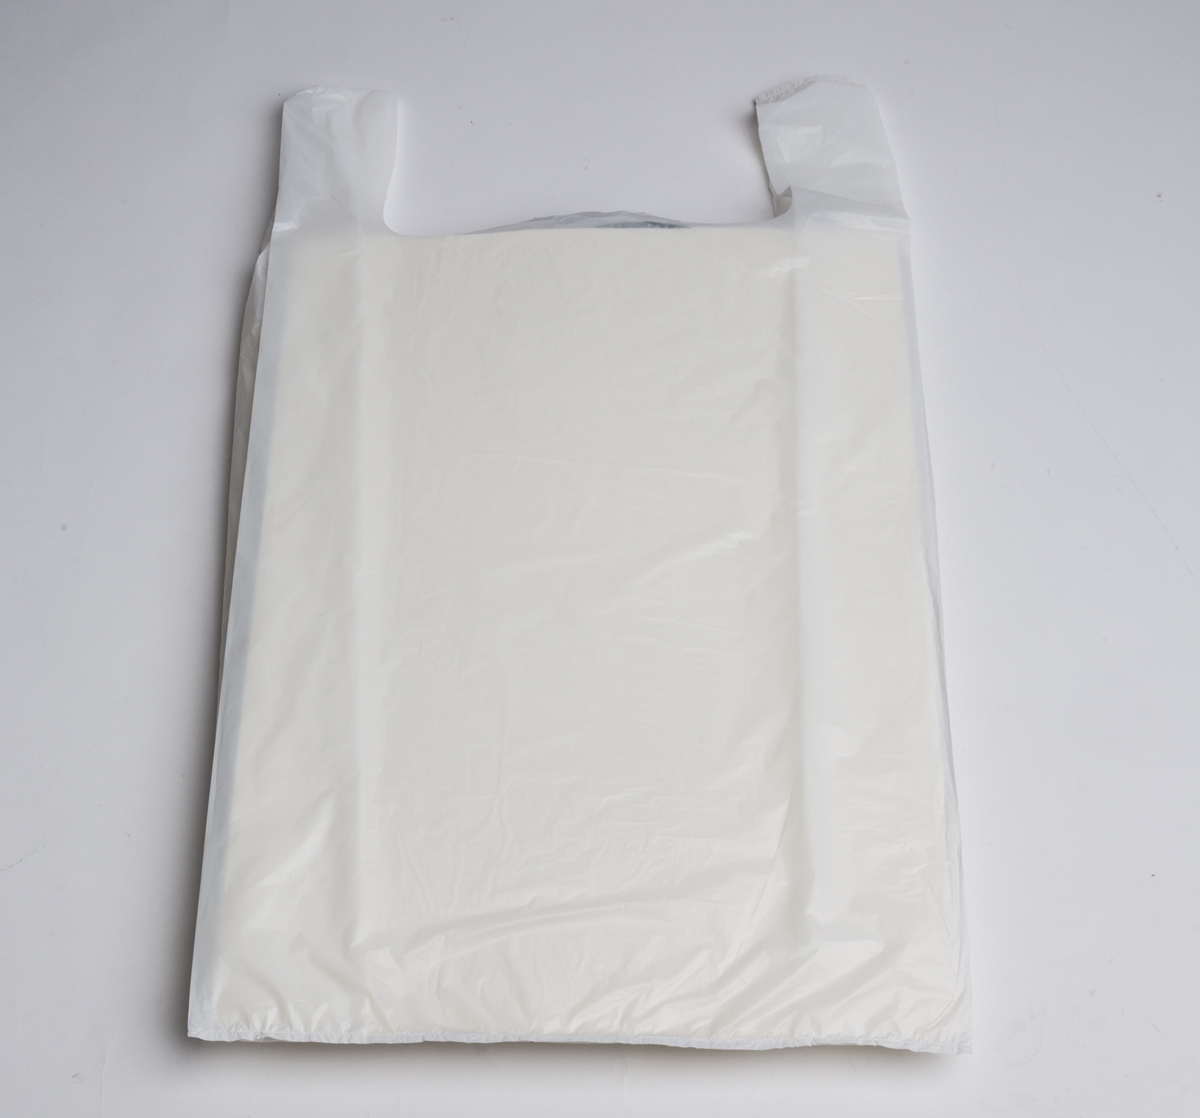 Jumbo T-Shirt Bags (White) (500 pcs.)